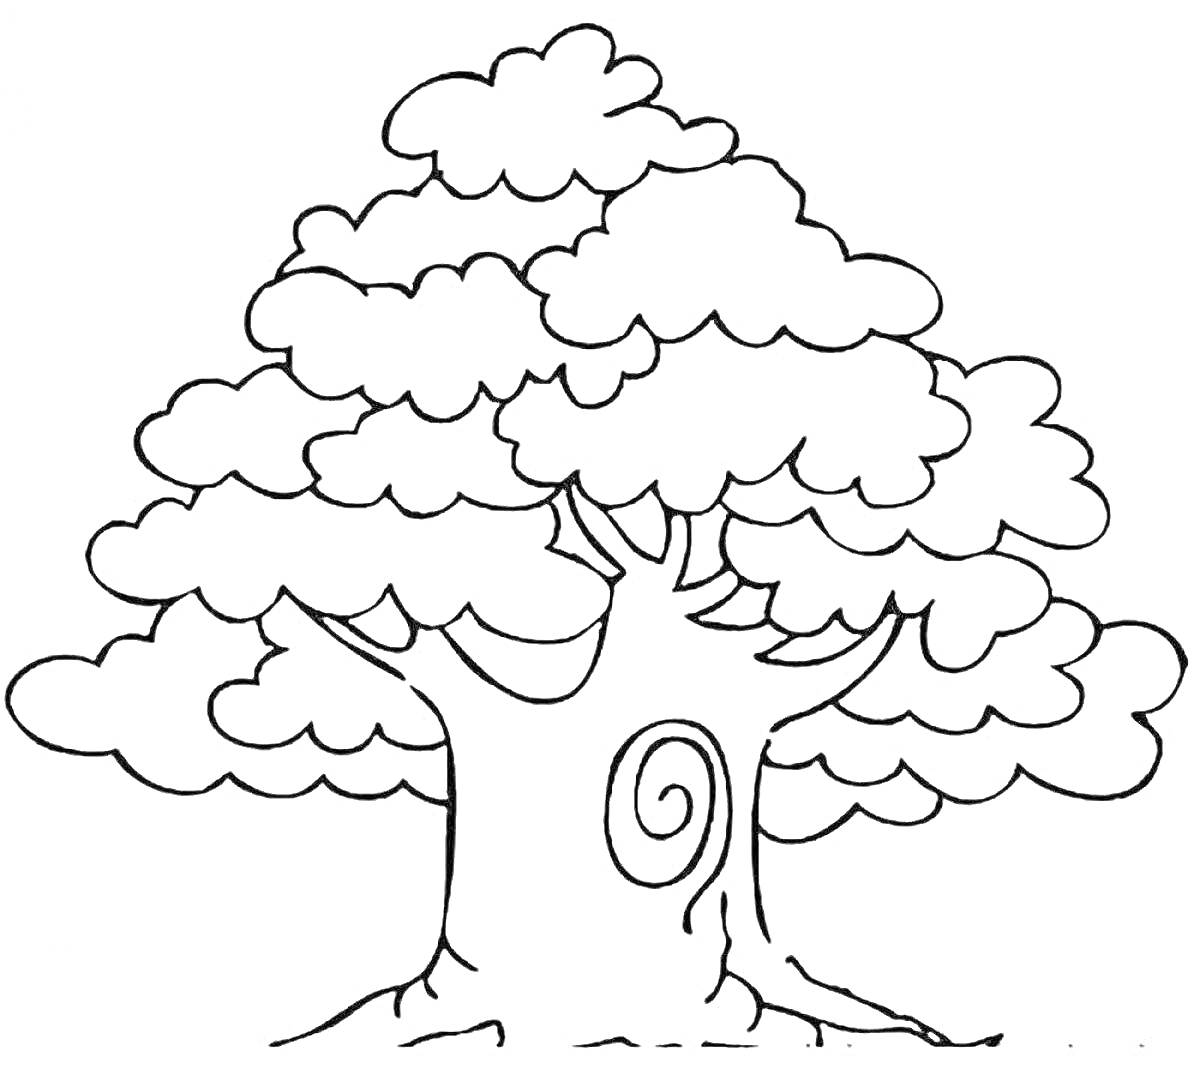 Дерево с витками в кроне и декоративным элементом на стволе